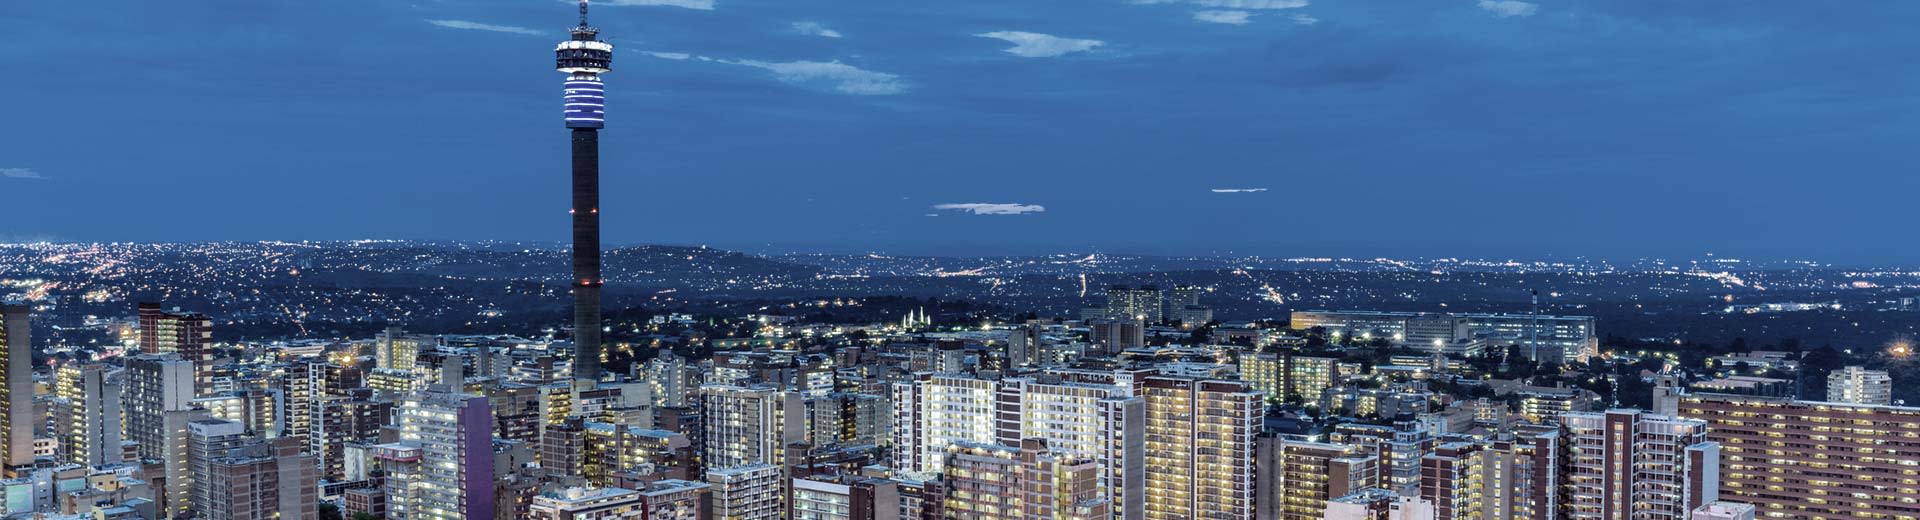 Die glitzernde Skyline Johannesburg in einer dunklen Nacht mit Hochhäusern und Wohneinheiten.